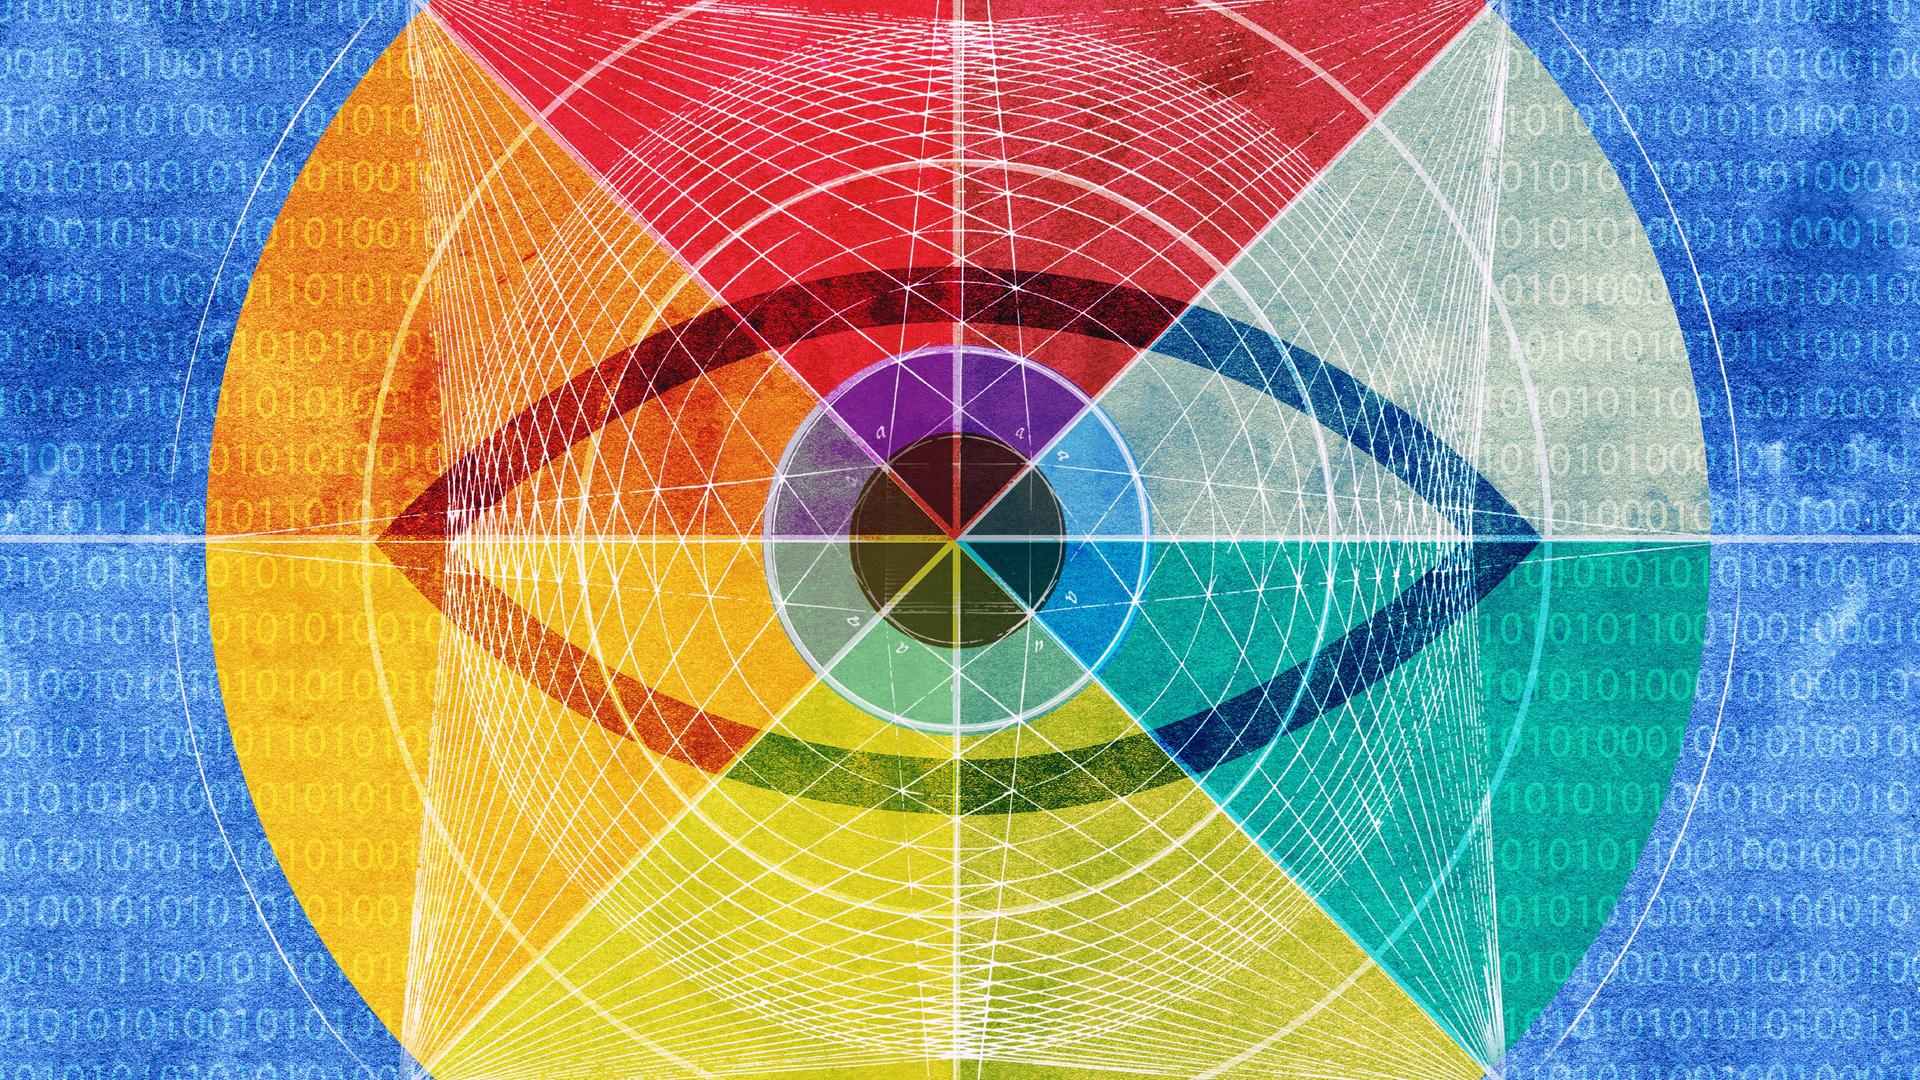 Illustration: Ein Auge im Zentrum eines Netzwerkmusters mit Binärcode unterlegt mit dem Farbenspektrum des Regenbogens.